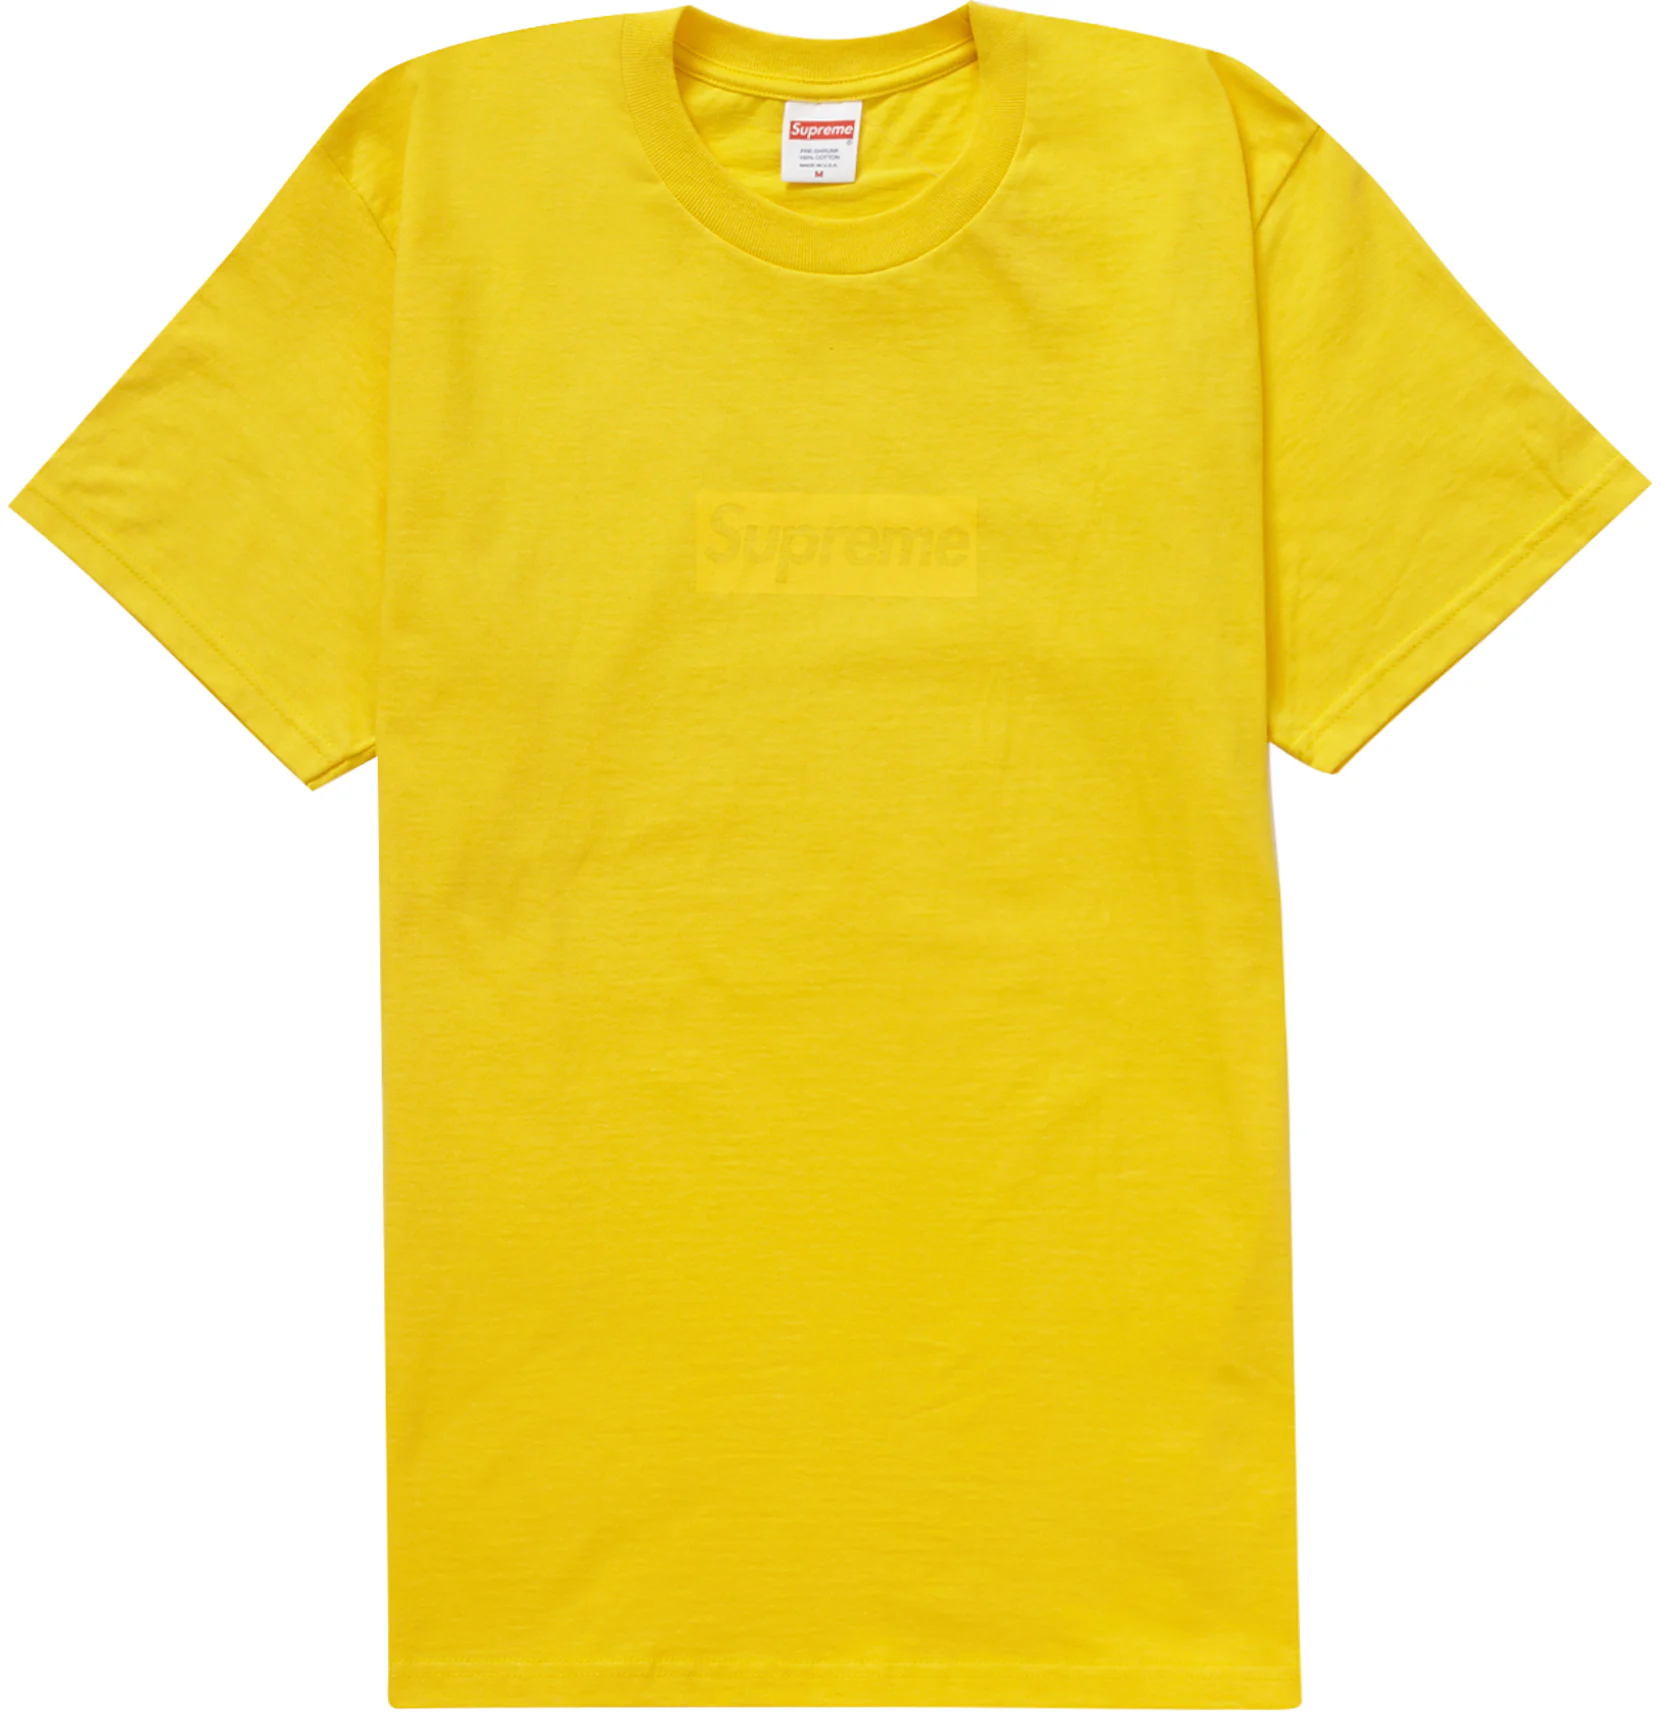 Supreme Yellow Button Up Shirt #supreme #streetwear - Depop